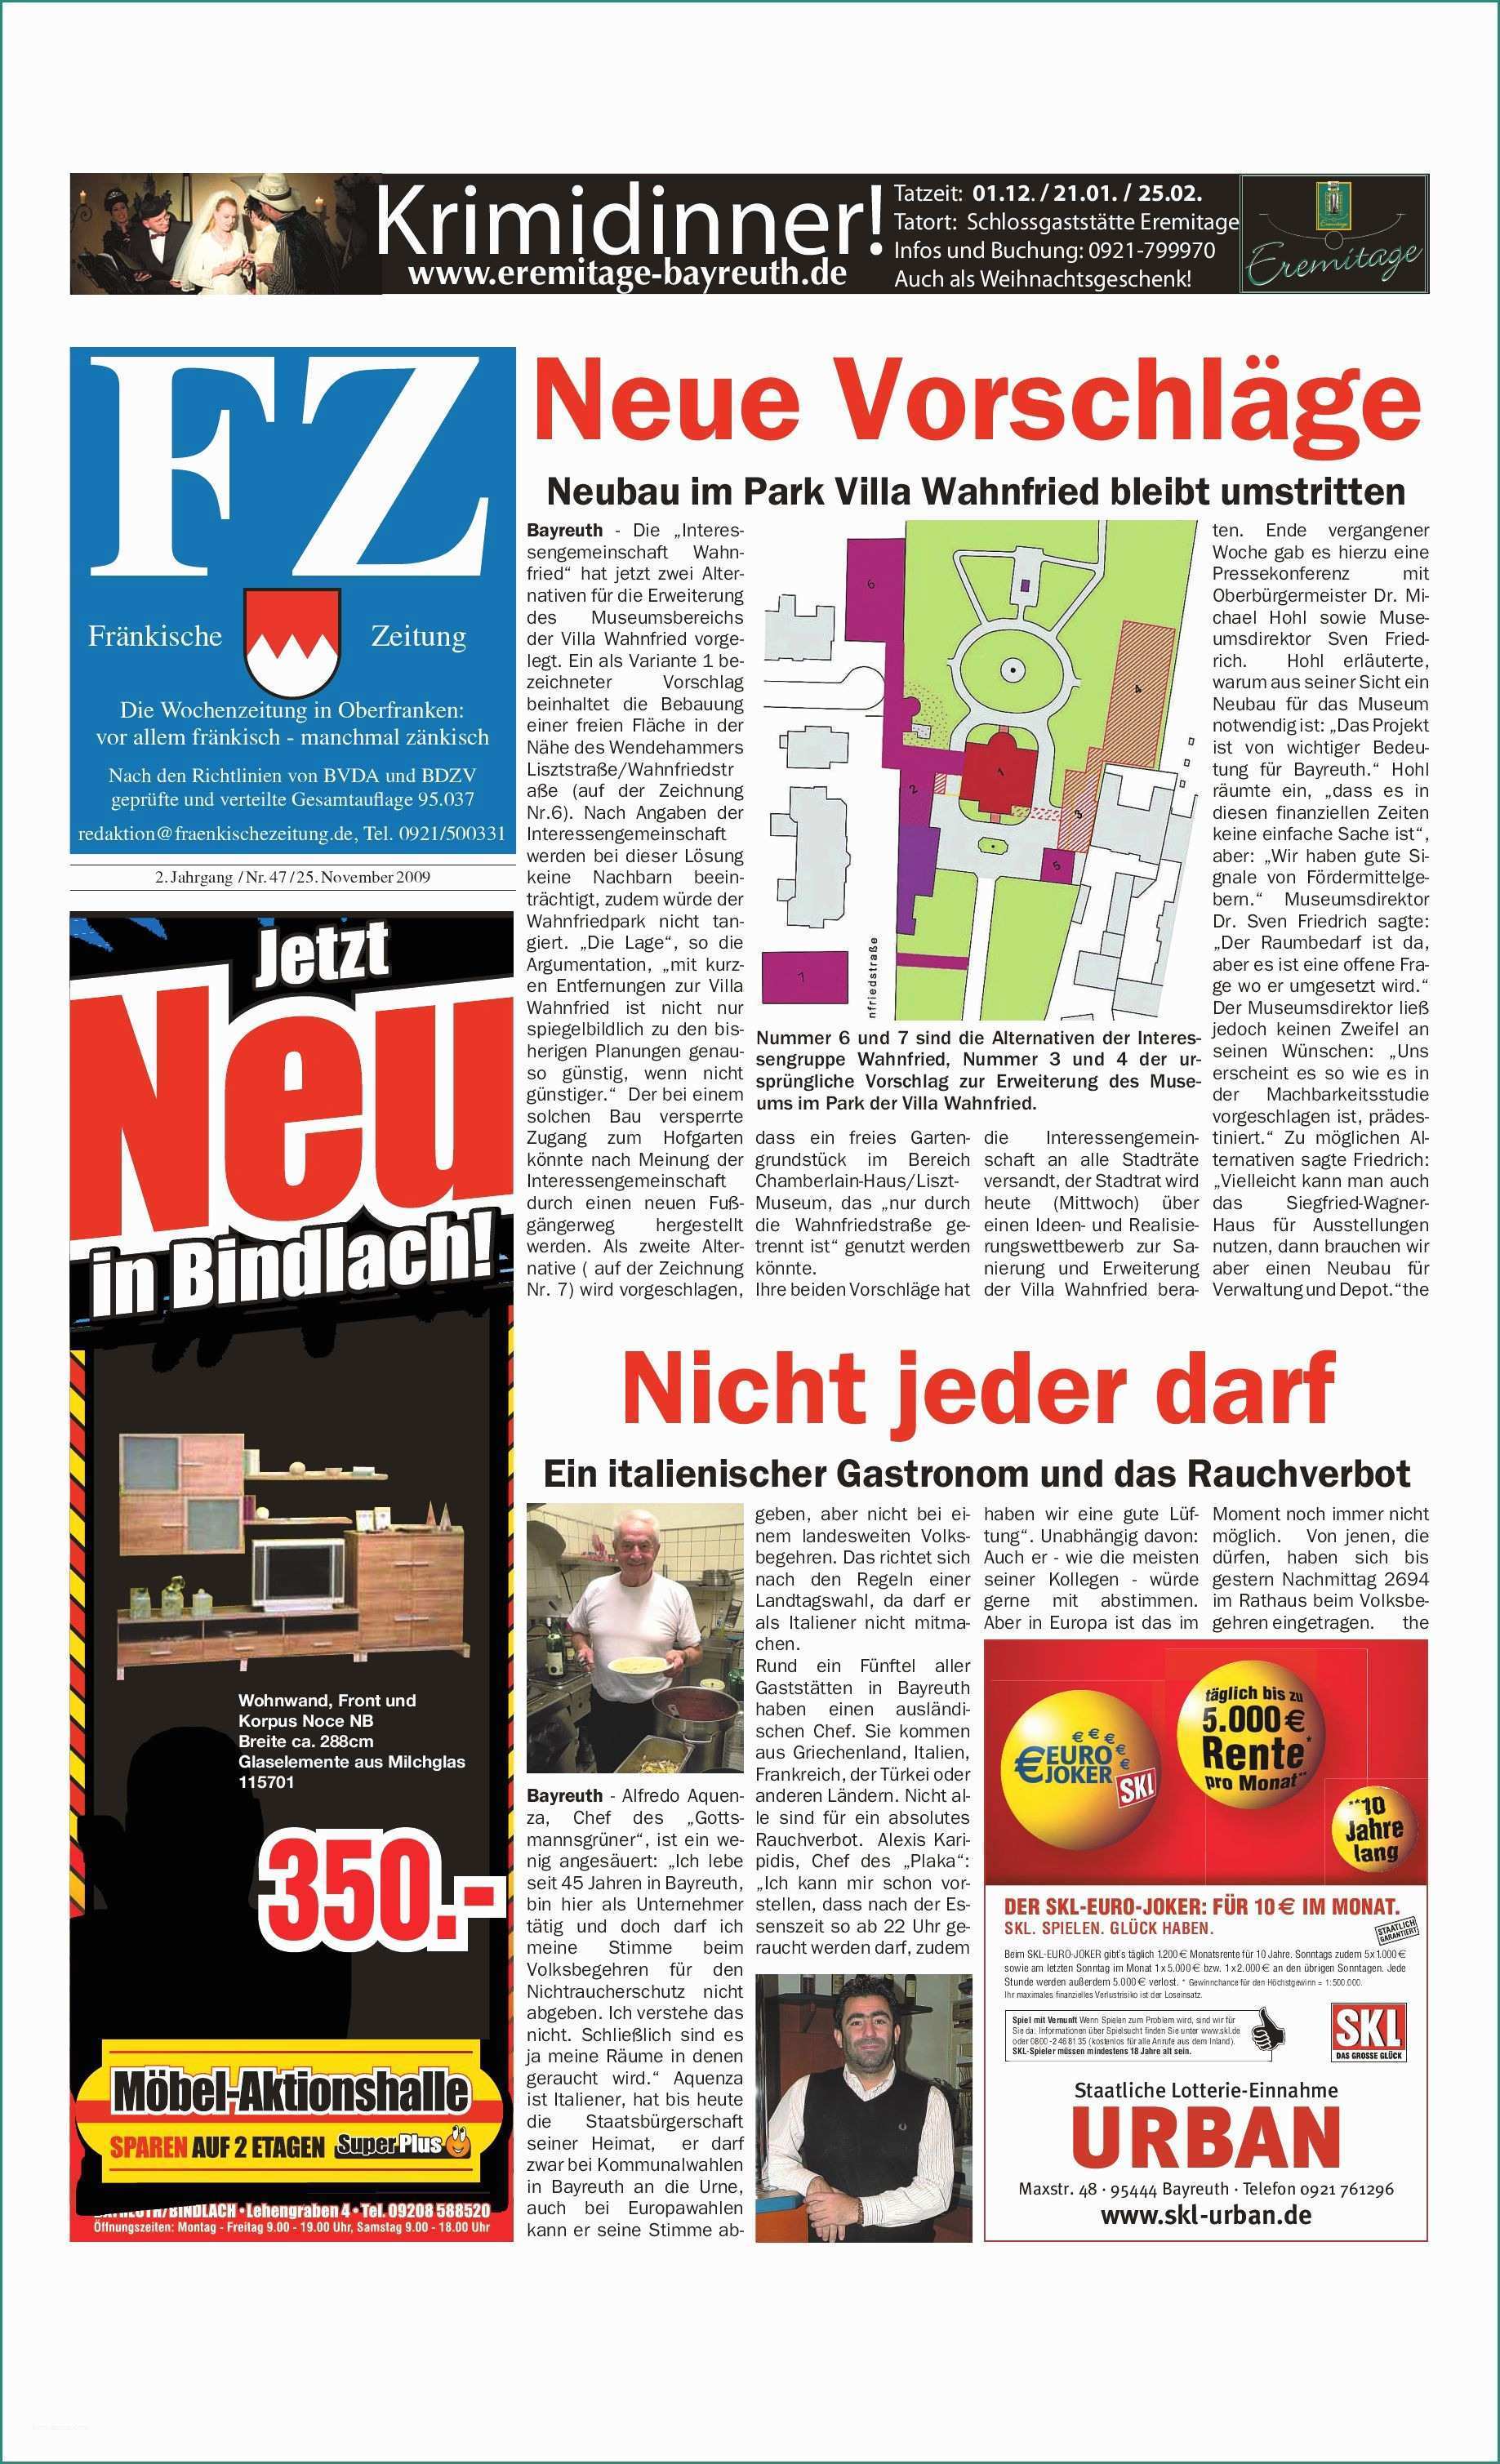 Giochi Degli Alex Amp Co E Fränkische Zeitung Vom 25 11 2009 by nordbayerischer Kurier Gmbh